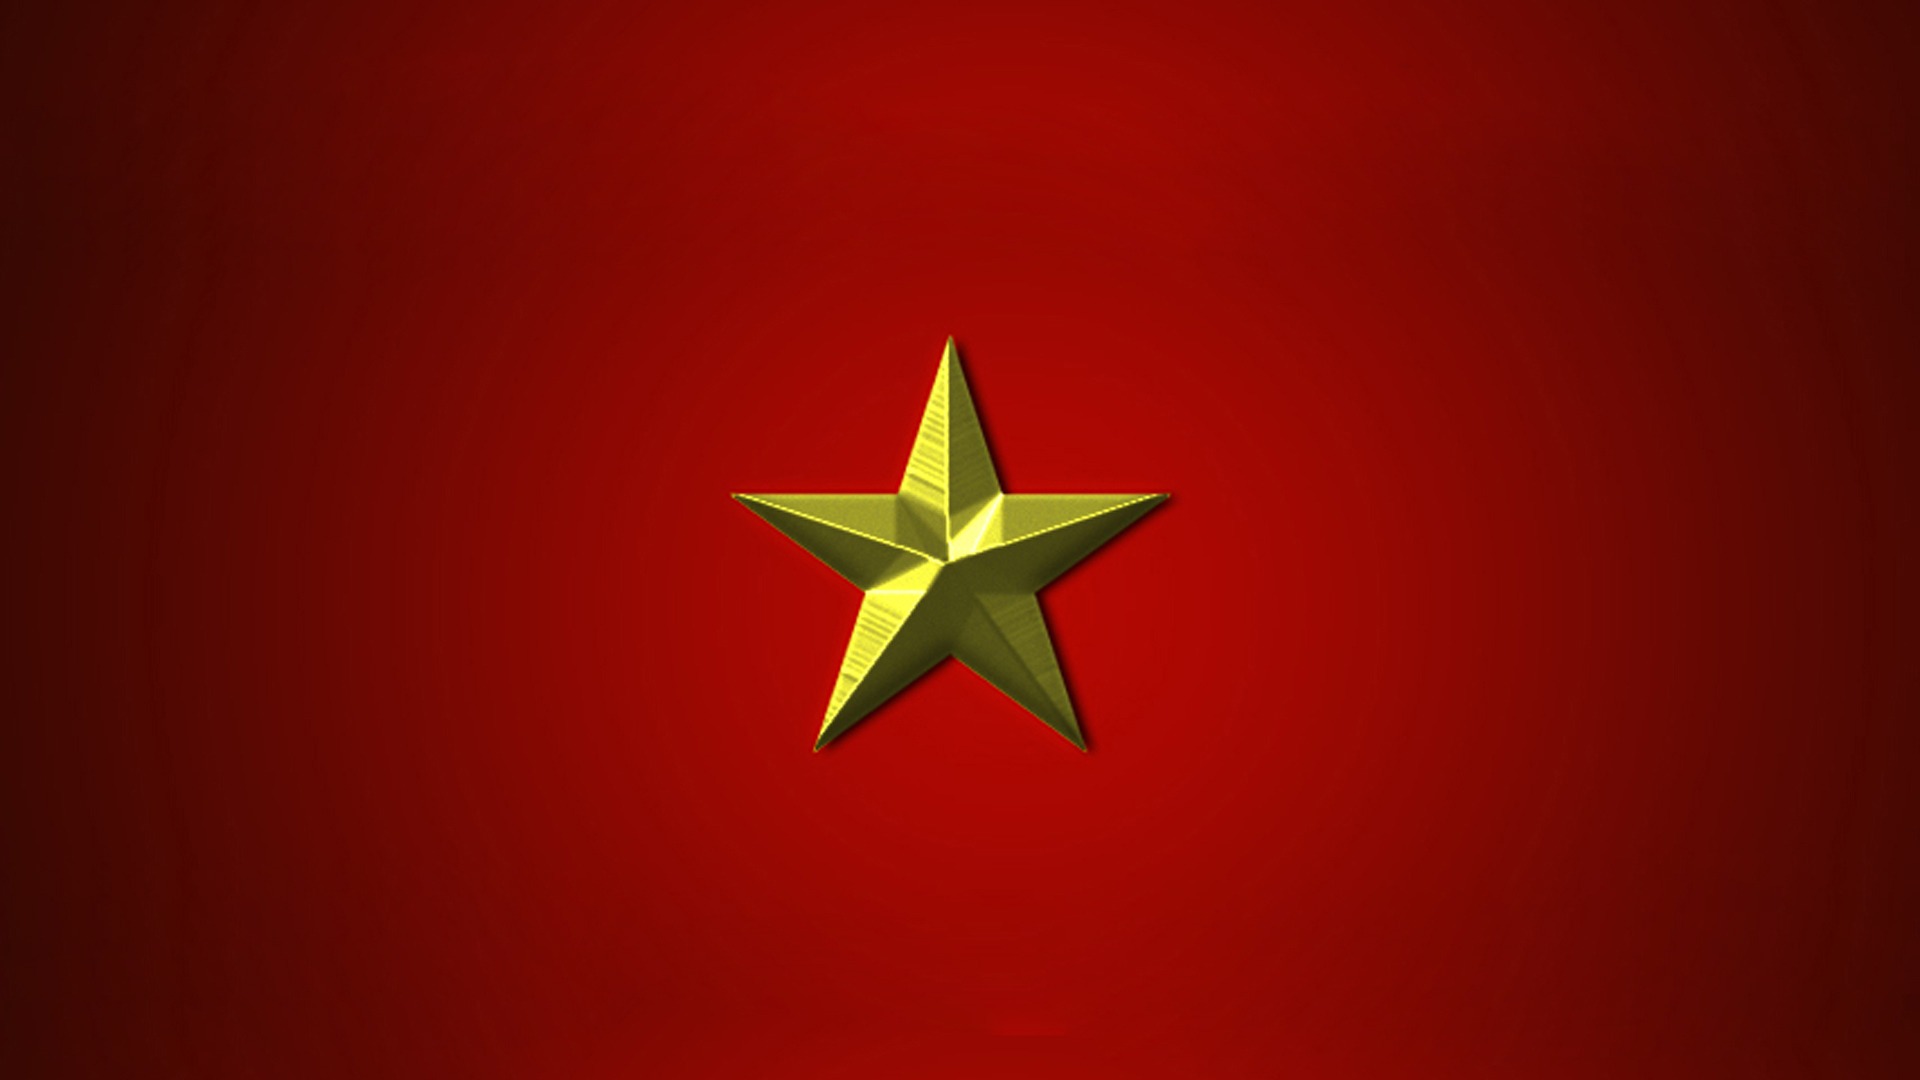 Tải cờ Việt Nam vector đẹp file AI EPS SVG PNG miễn phí